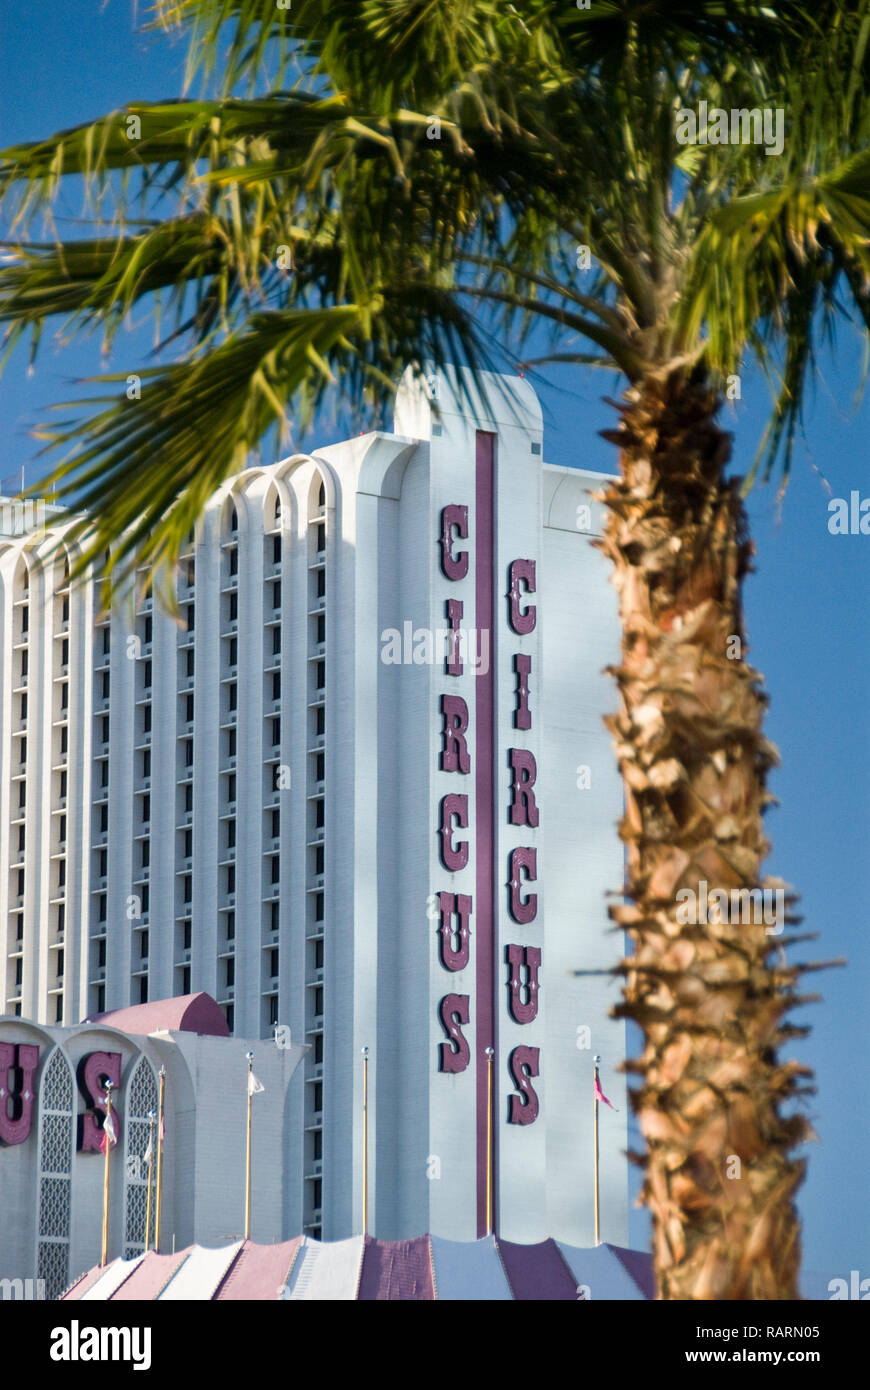 The Circus Circus Las Vegas is a hotel, casino and RV park on the Las Vegas Strip, Las Vegas, Nevada. Stock Photo